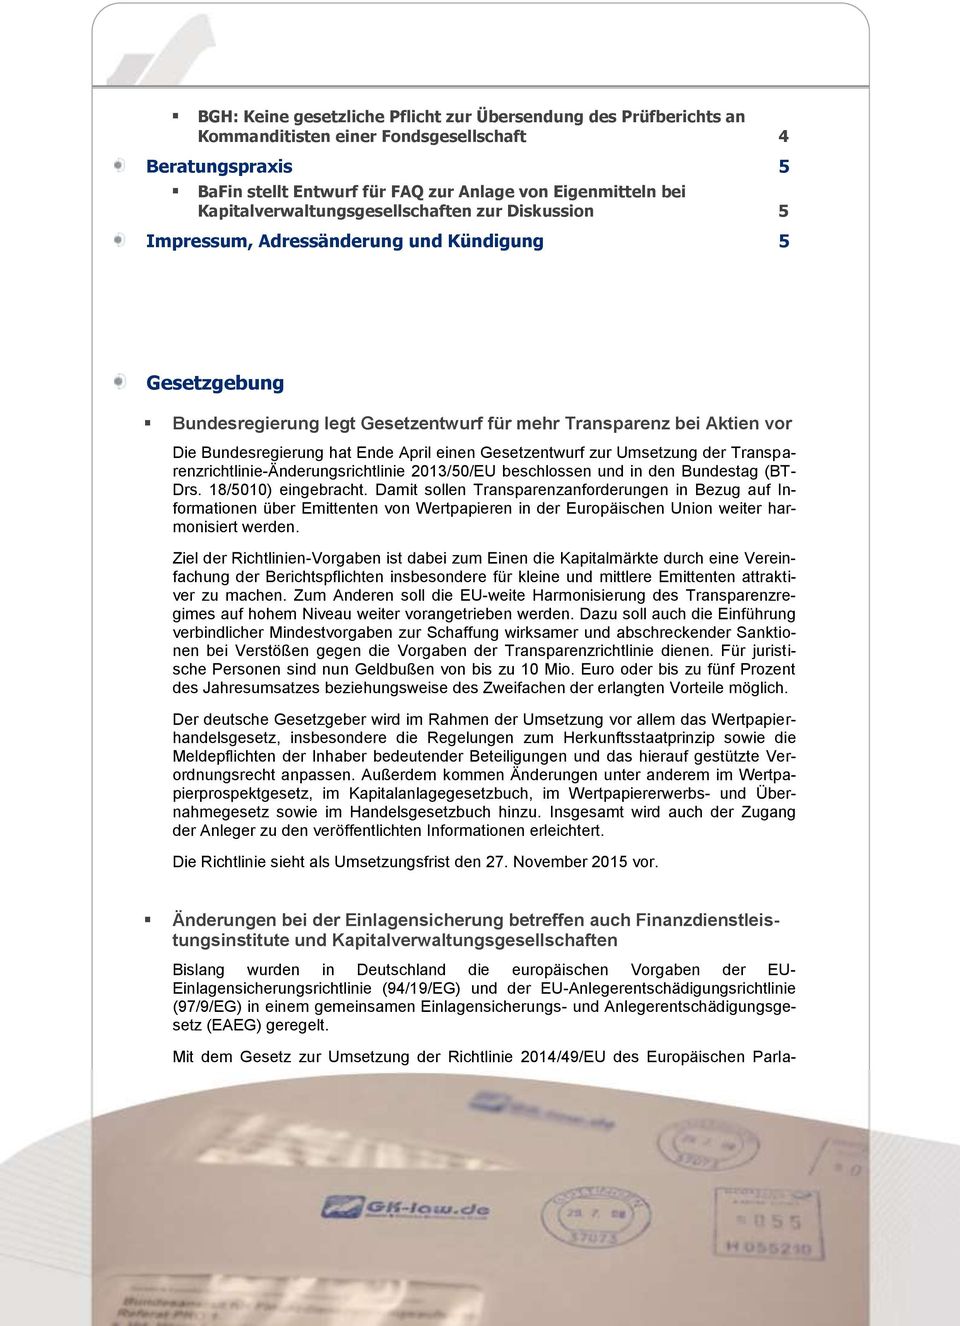 Ende April einen Gesetzentwurf zur Umsetzung der Transparenzrichtlinie-Änderungsrichtlinie 2013/50/EU beschlossen und in den Bundestag (BT- Drs. 18/5010) eingebracht.